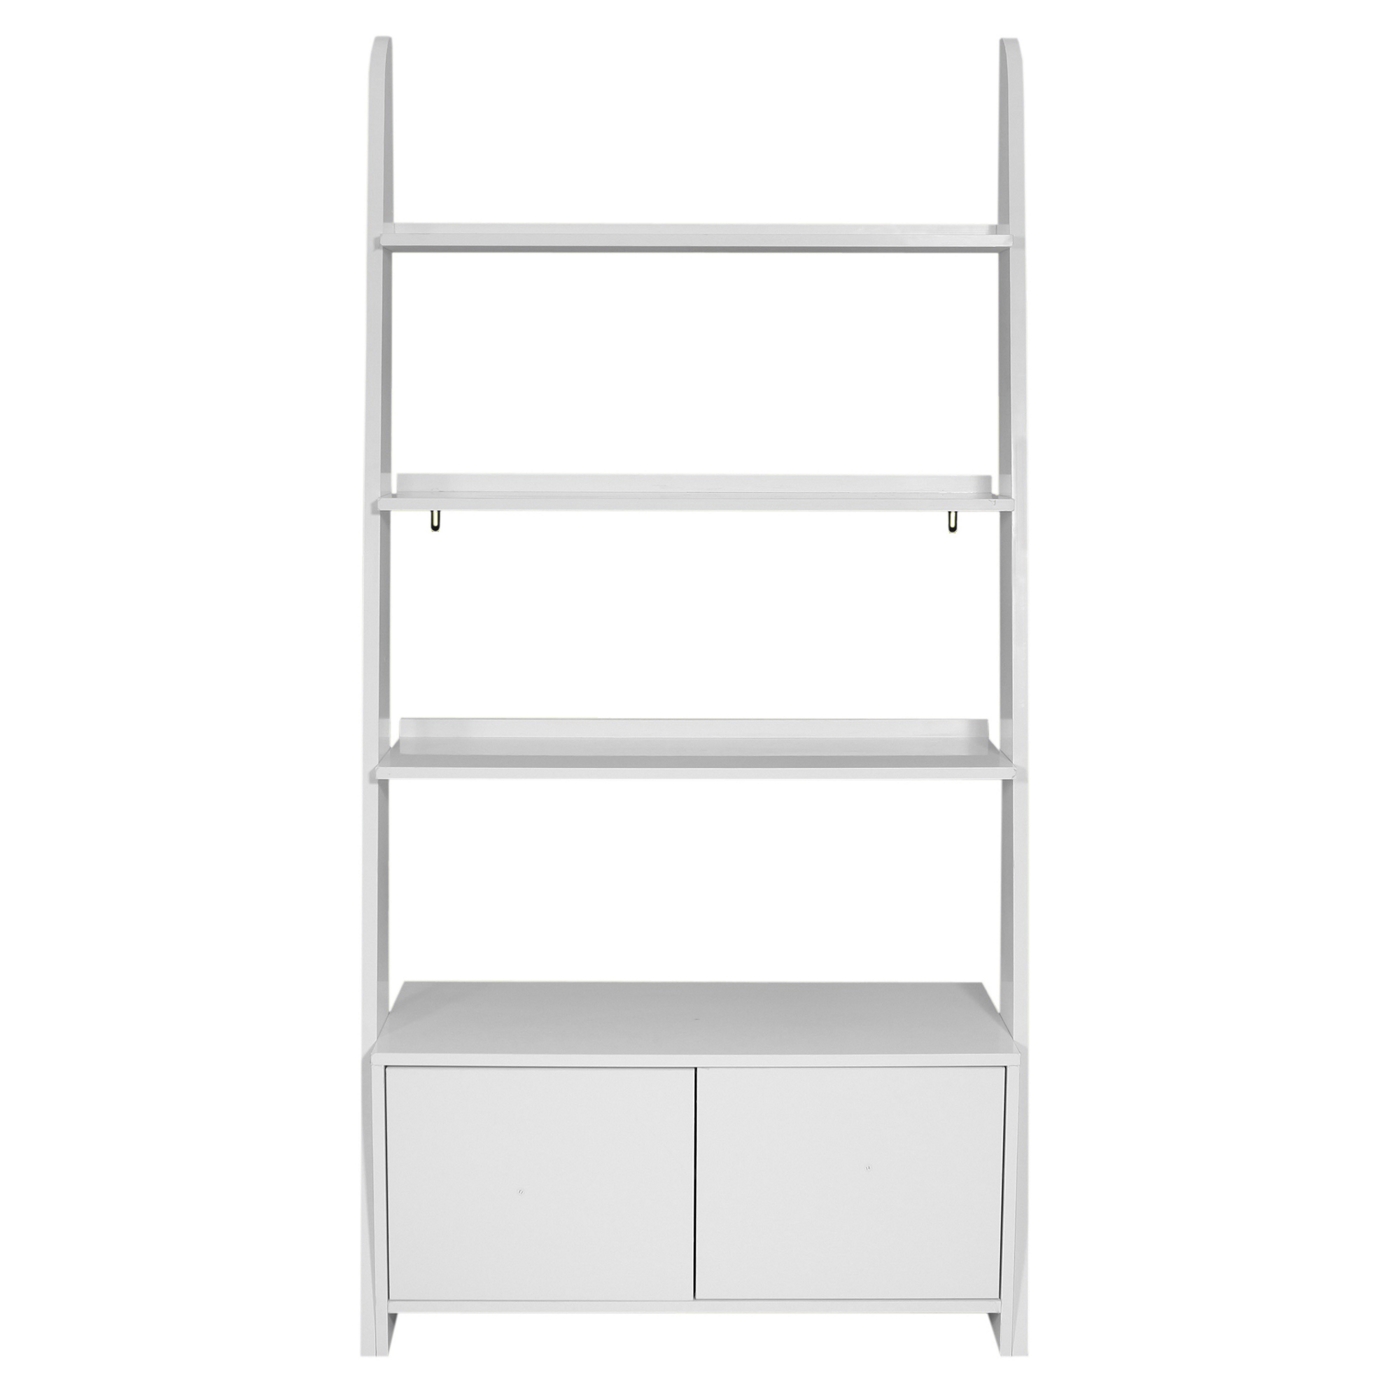 White Nash gloss wall storage shelf unit